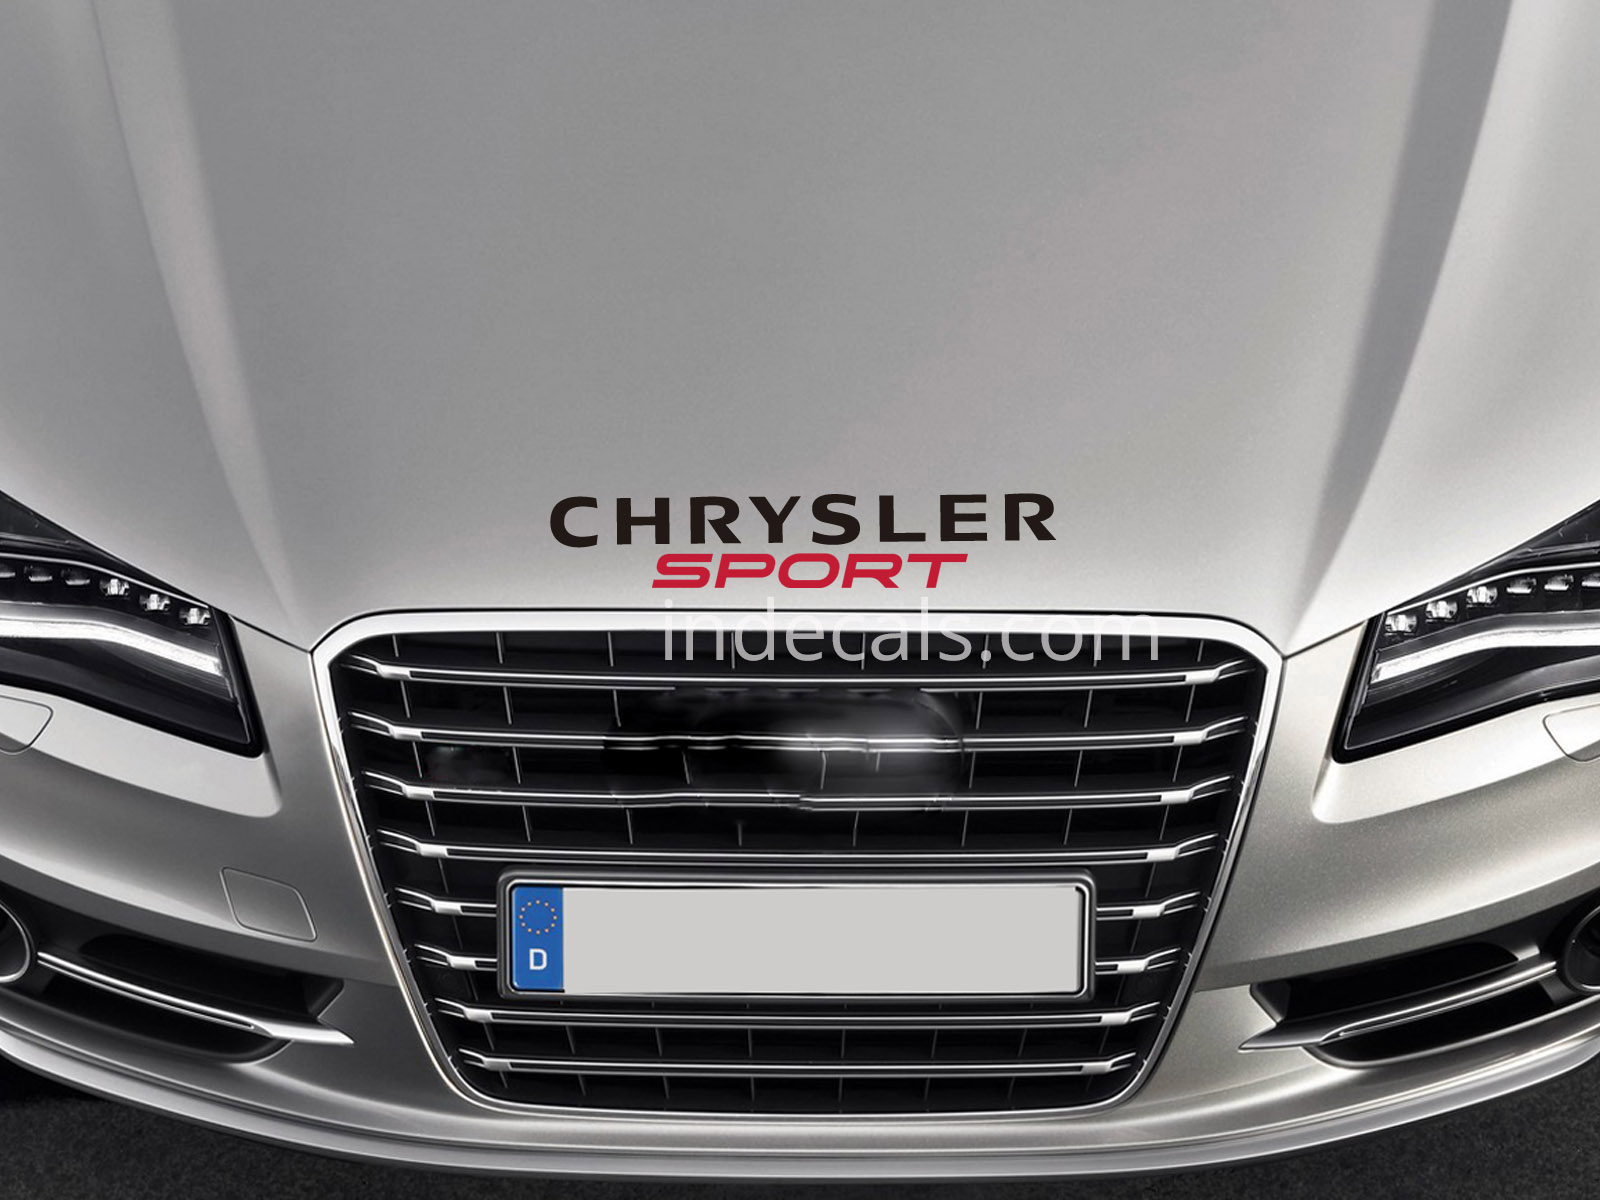 1 x Chrysler Sport Sticker for Bonnet - Black & Red